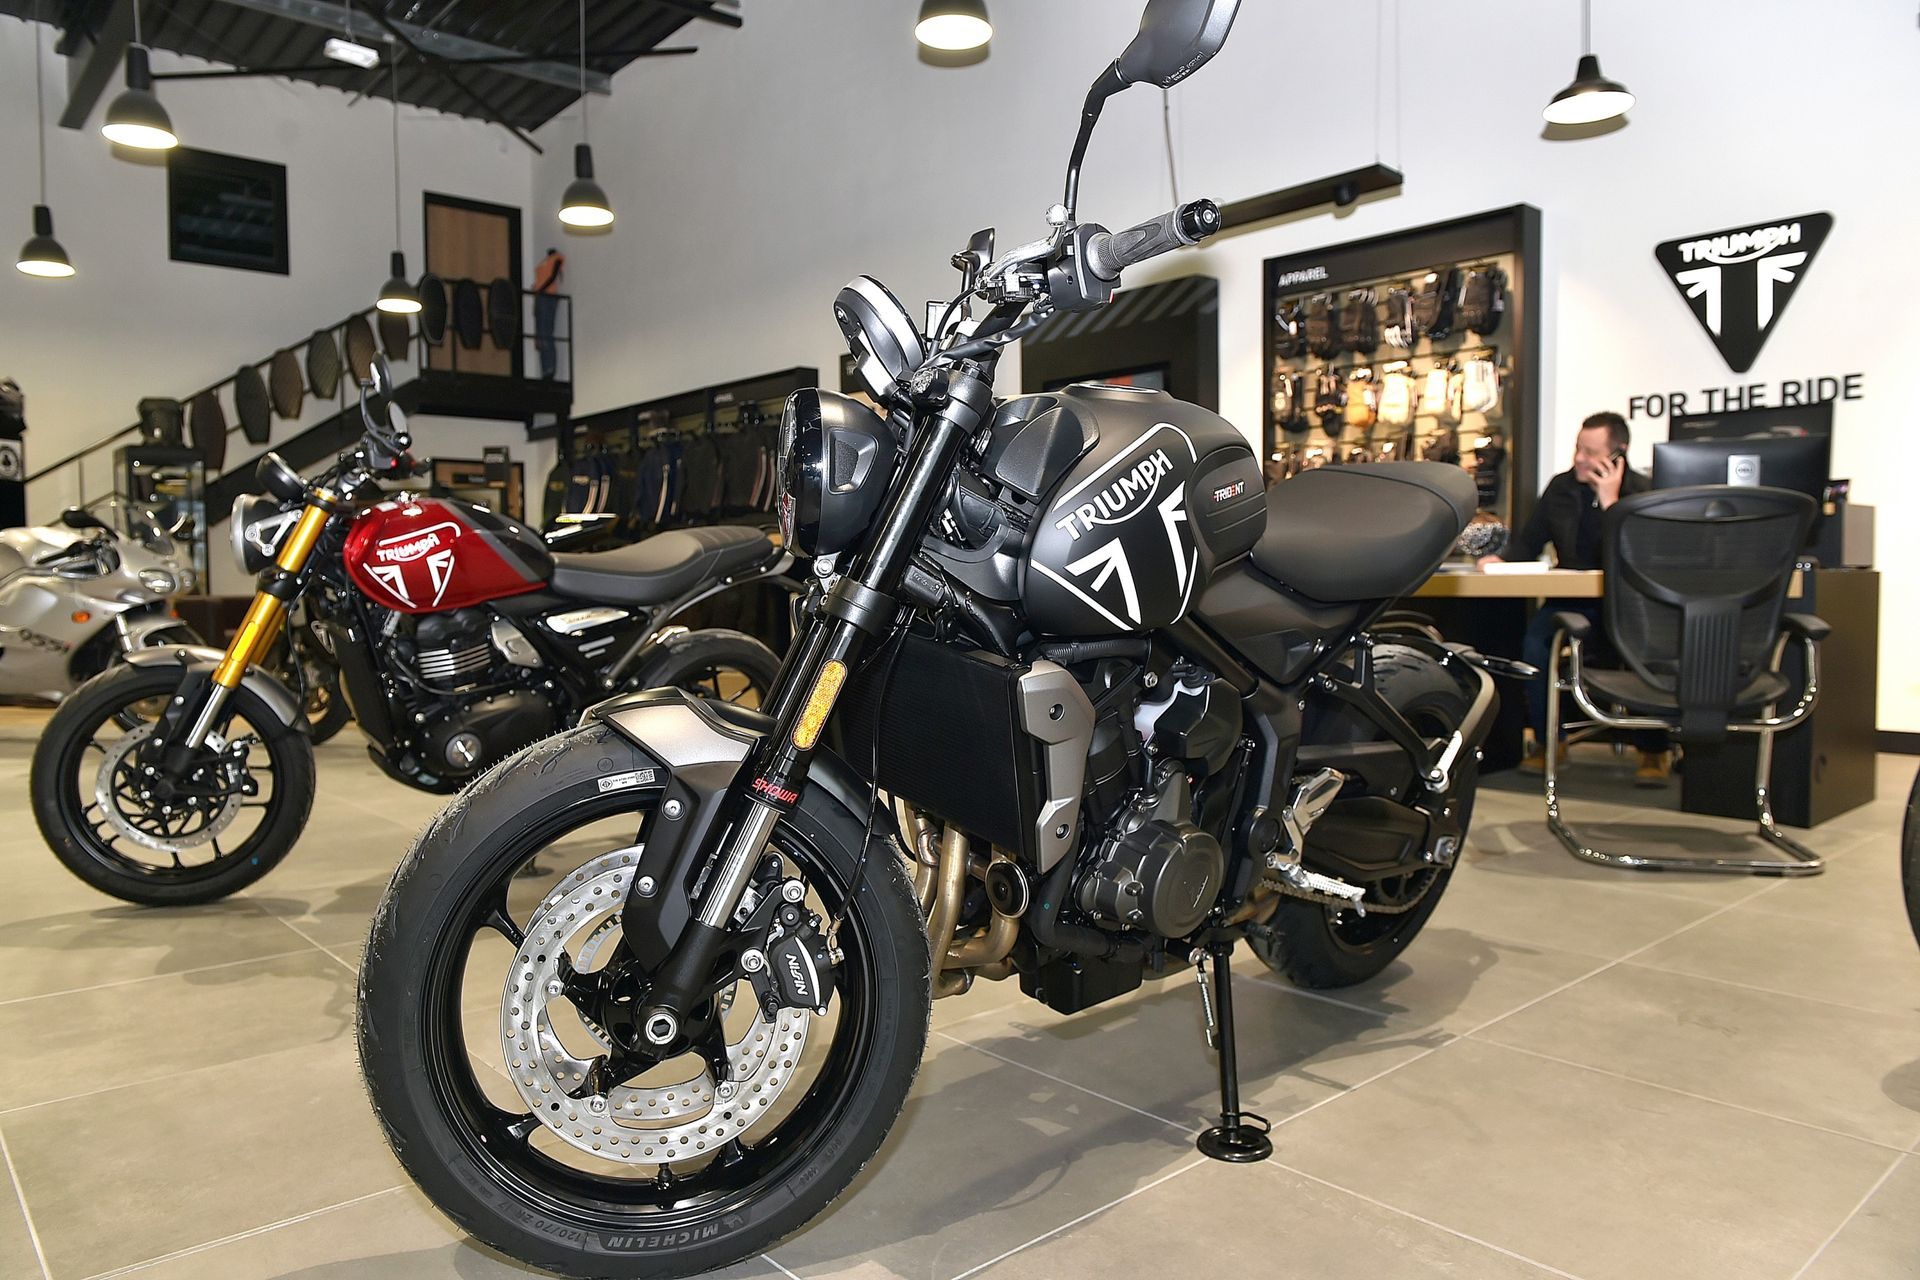 Moto Triumph exposée dans un magasin